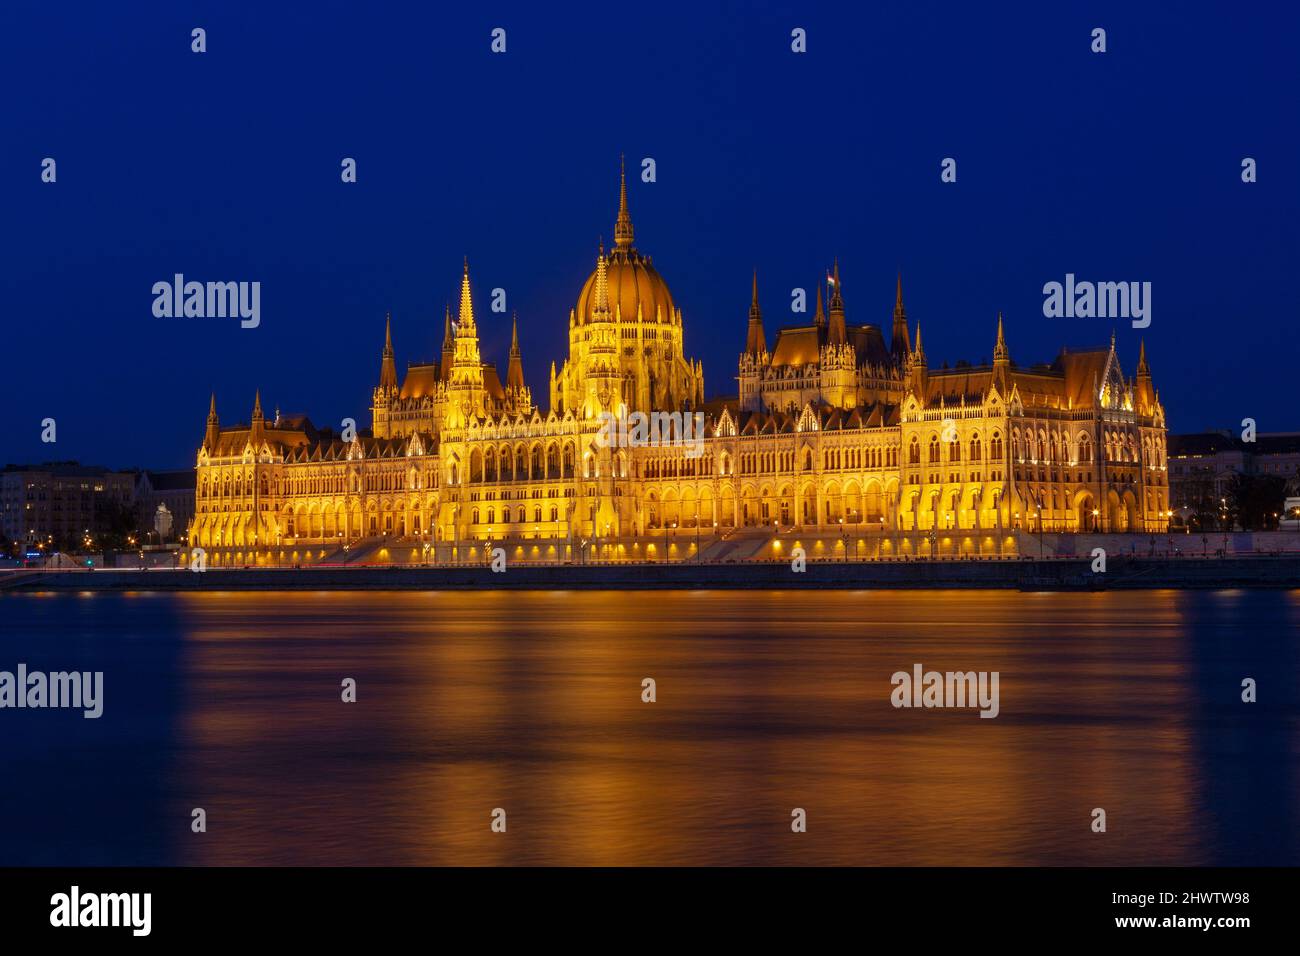 Das ungarische Parlamentsgebäude, ein bemerkenswertes Wahrzeichen Ungarns in Budapest. Blick auf die Hauptfassade beleuchtet über der Donau. Langes Exposur Stockfoto